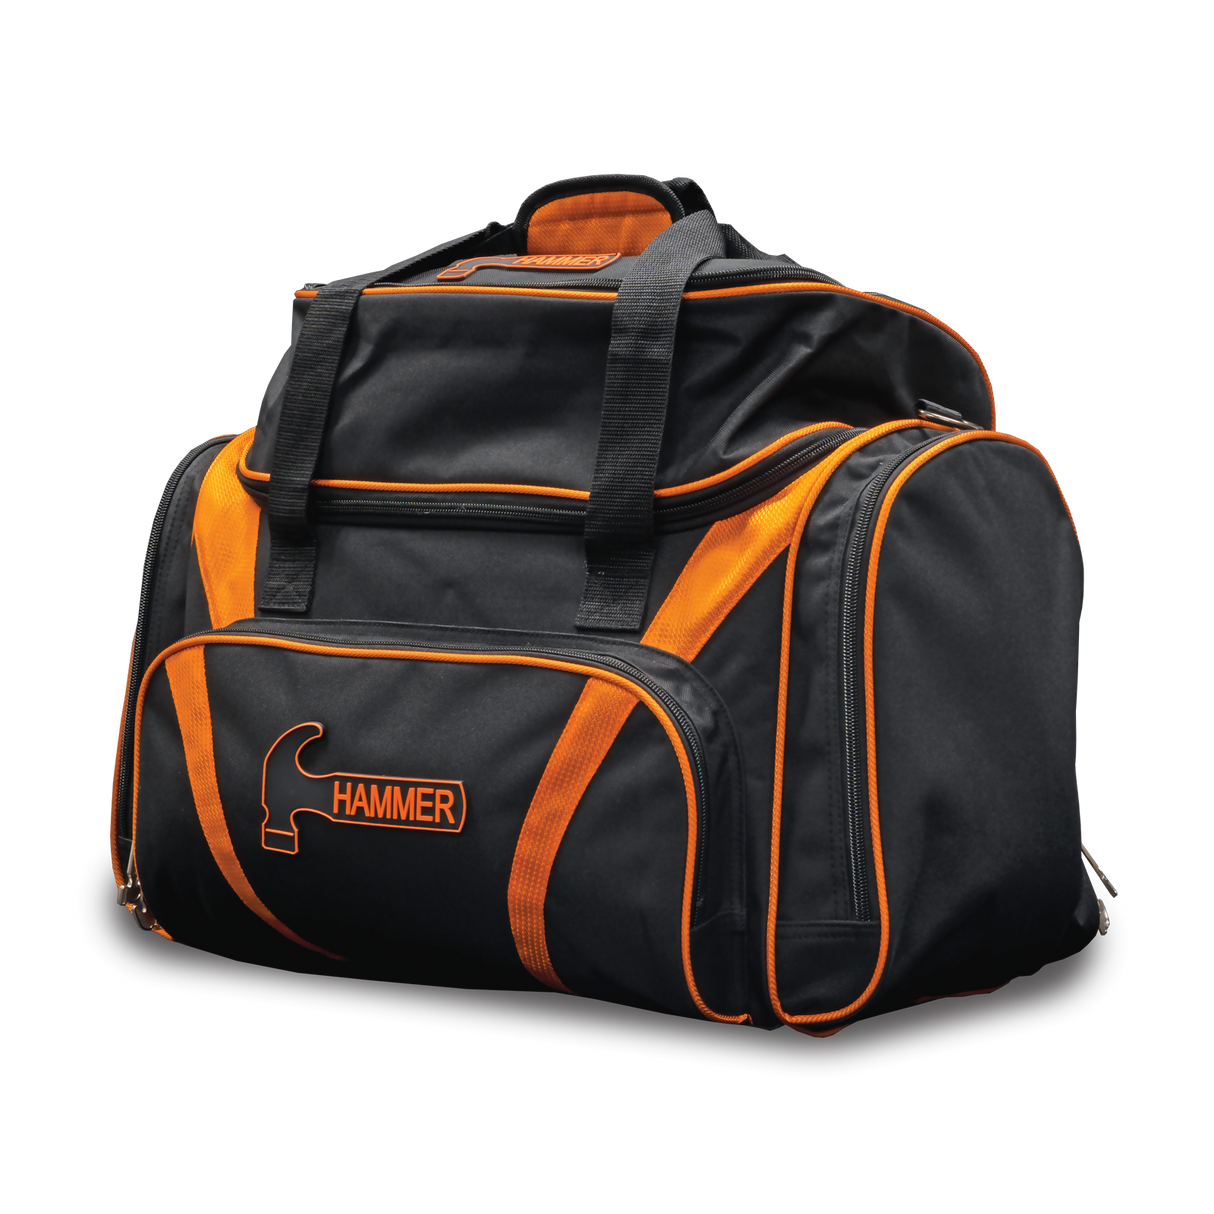 Hammer Premium Deluxe Orange Black Double Tote 2 Ball Bowling Bag suitcase league tournament play sale discount coupon online pba tour